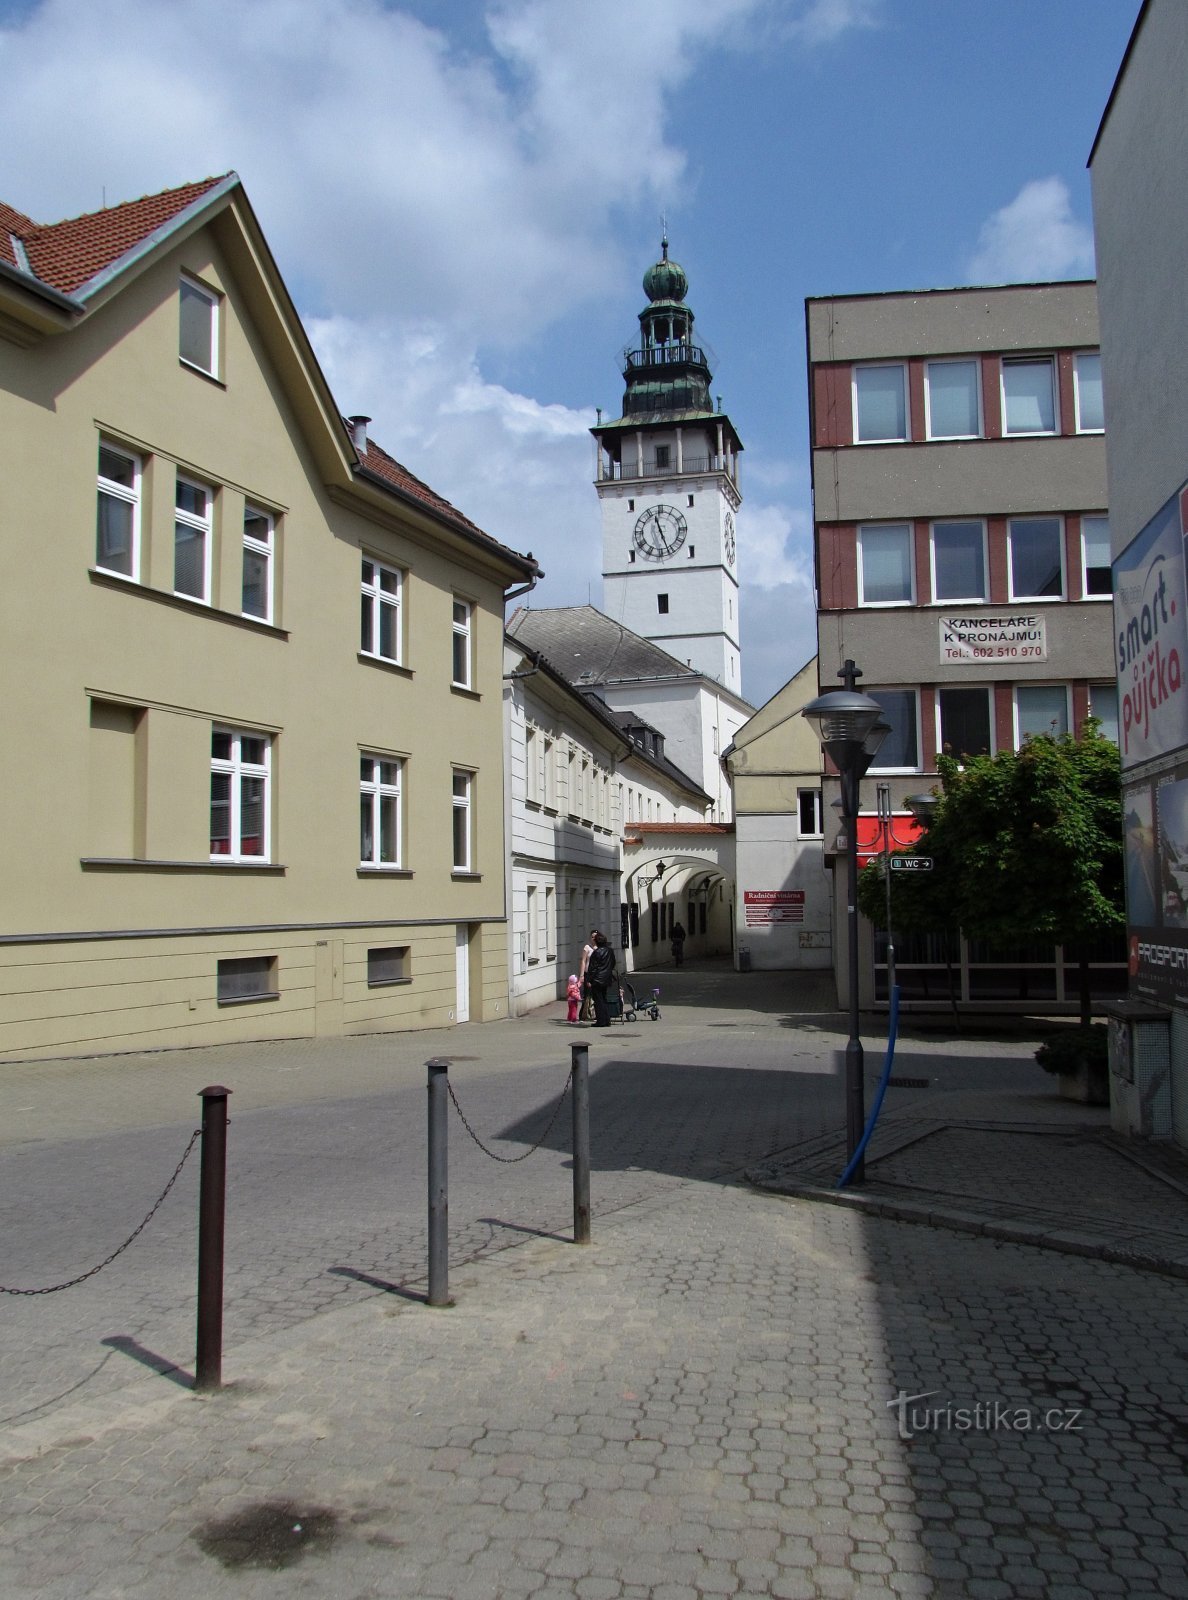 wieża ratusza od ulicy Radniční